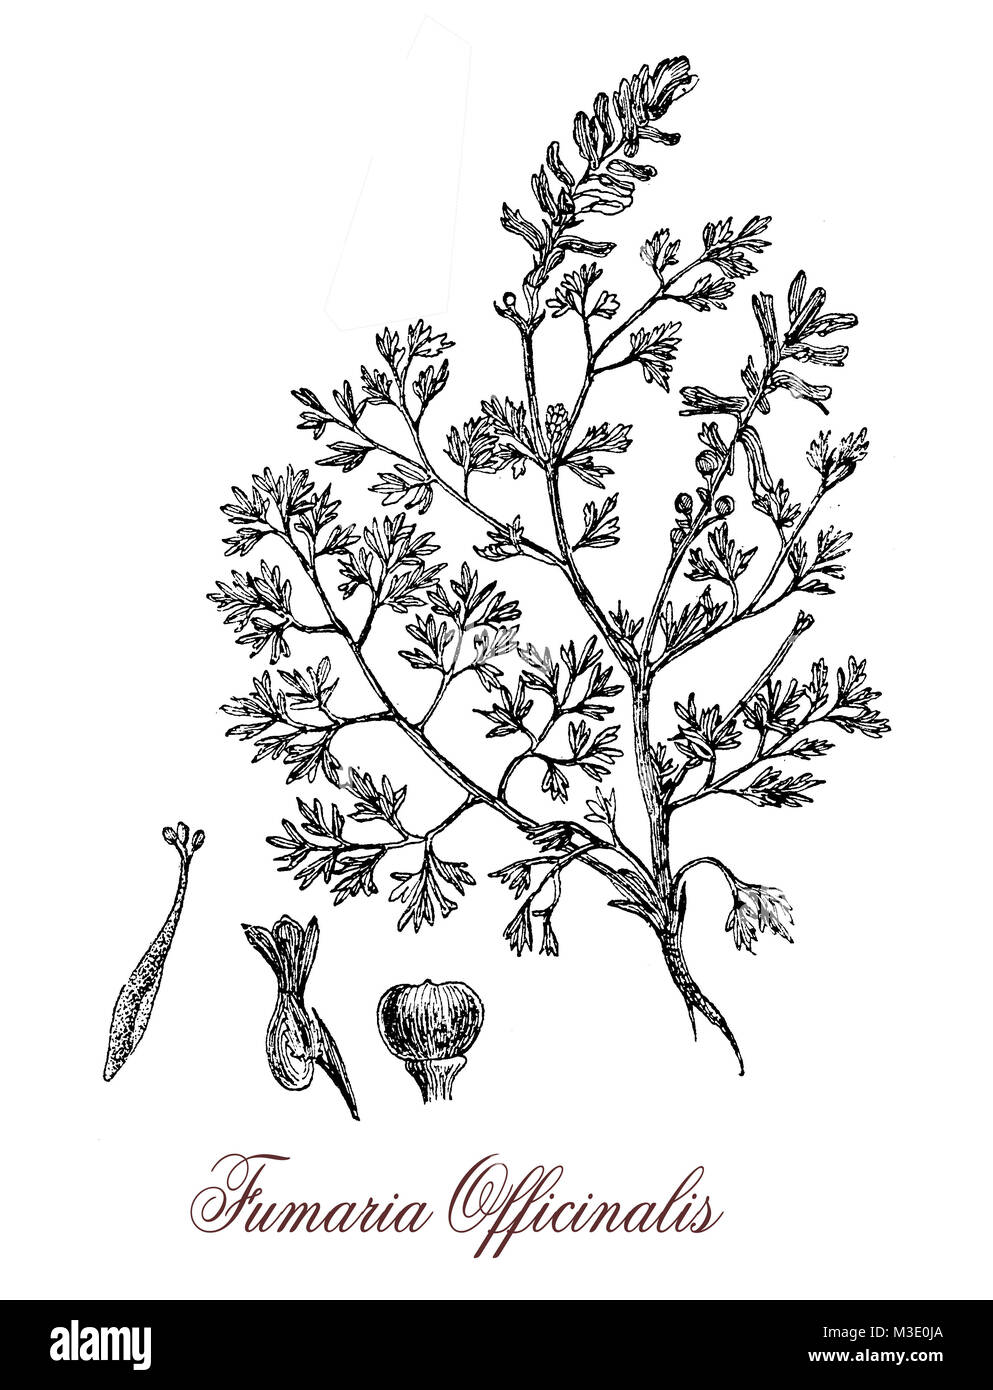 Vintage incisione di fumaria officinalis, fioritura delle piante della famiglia di papavero, velenosi usati in medicina a base di erbe Foto Stock